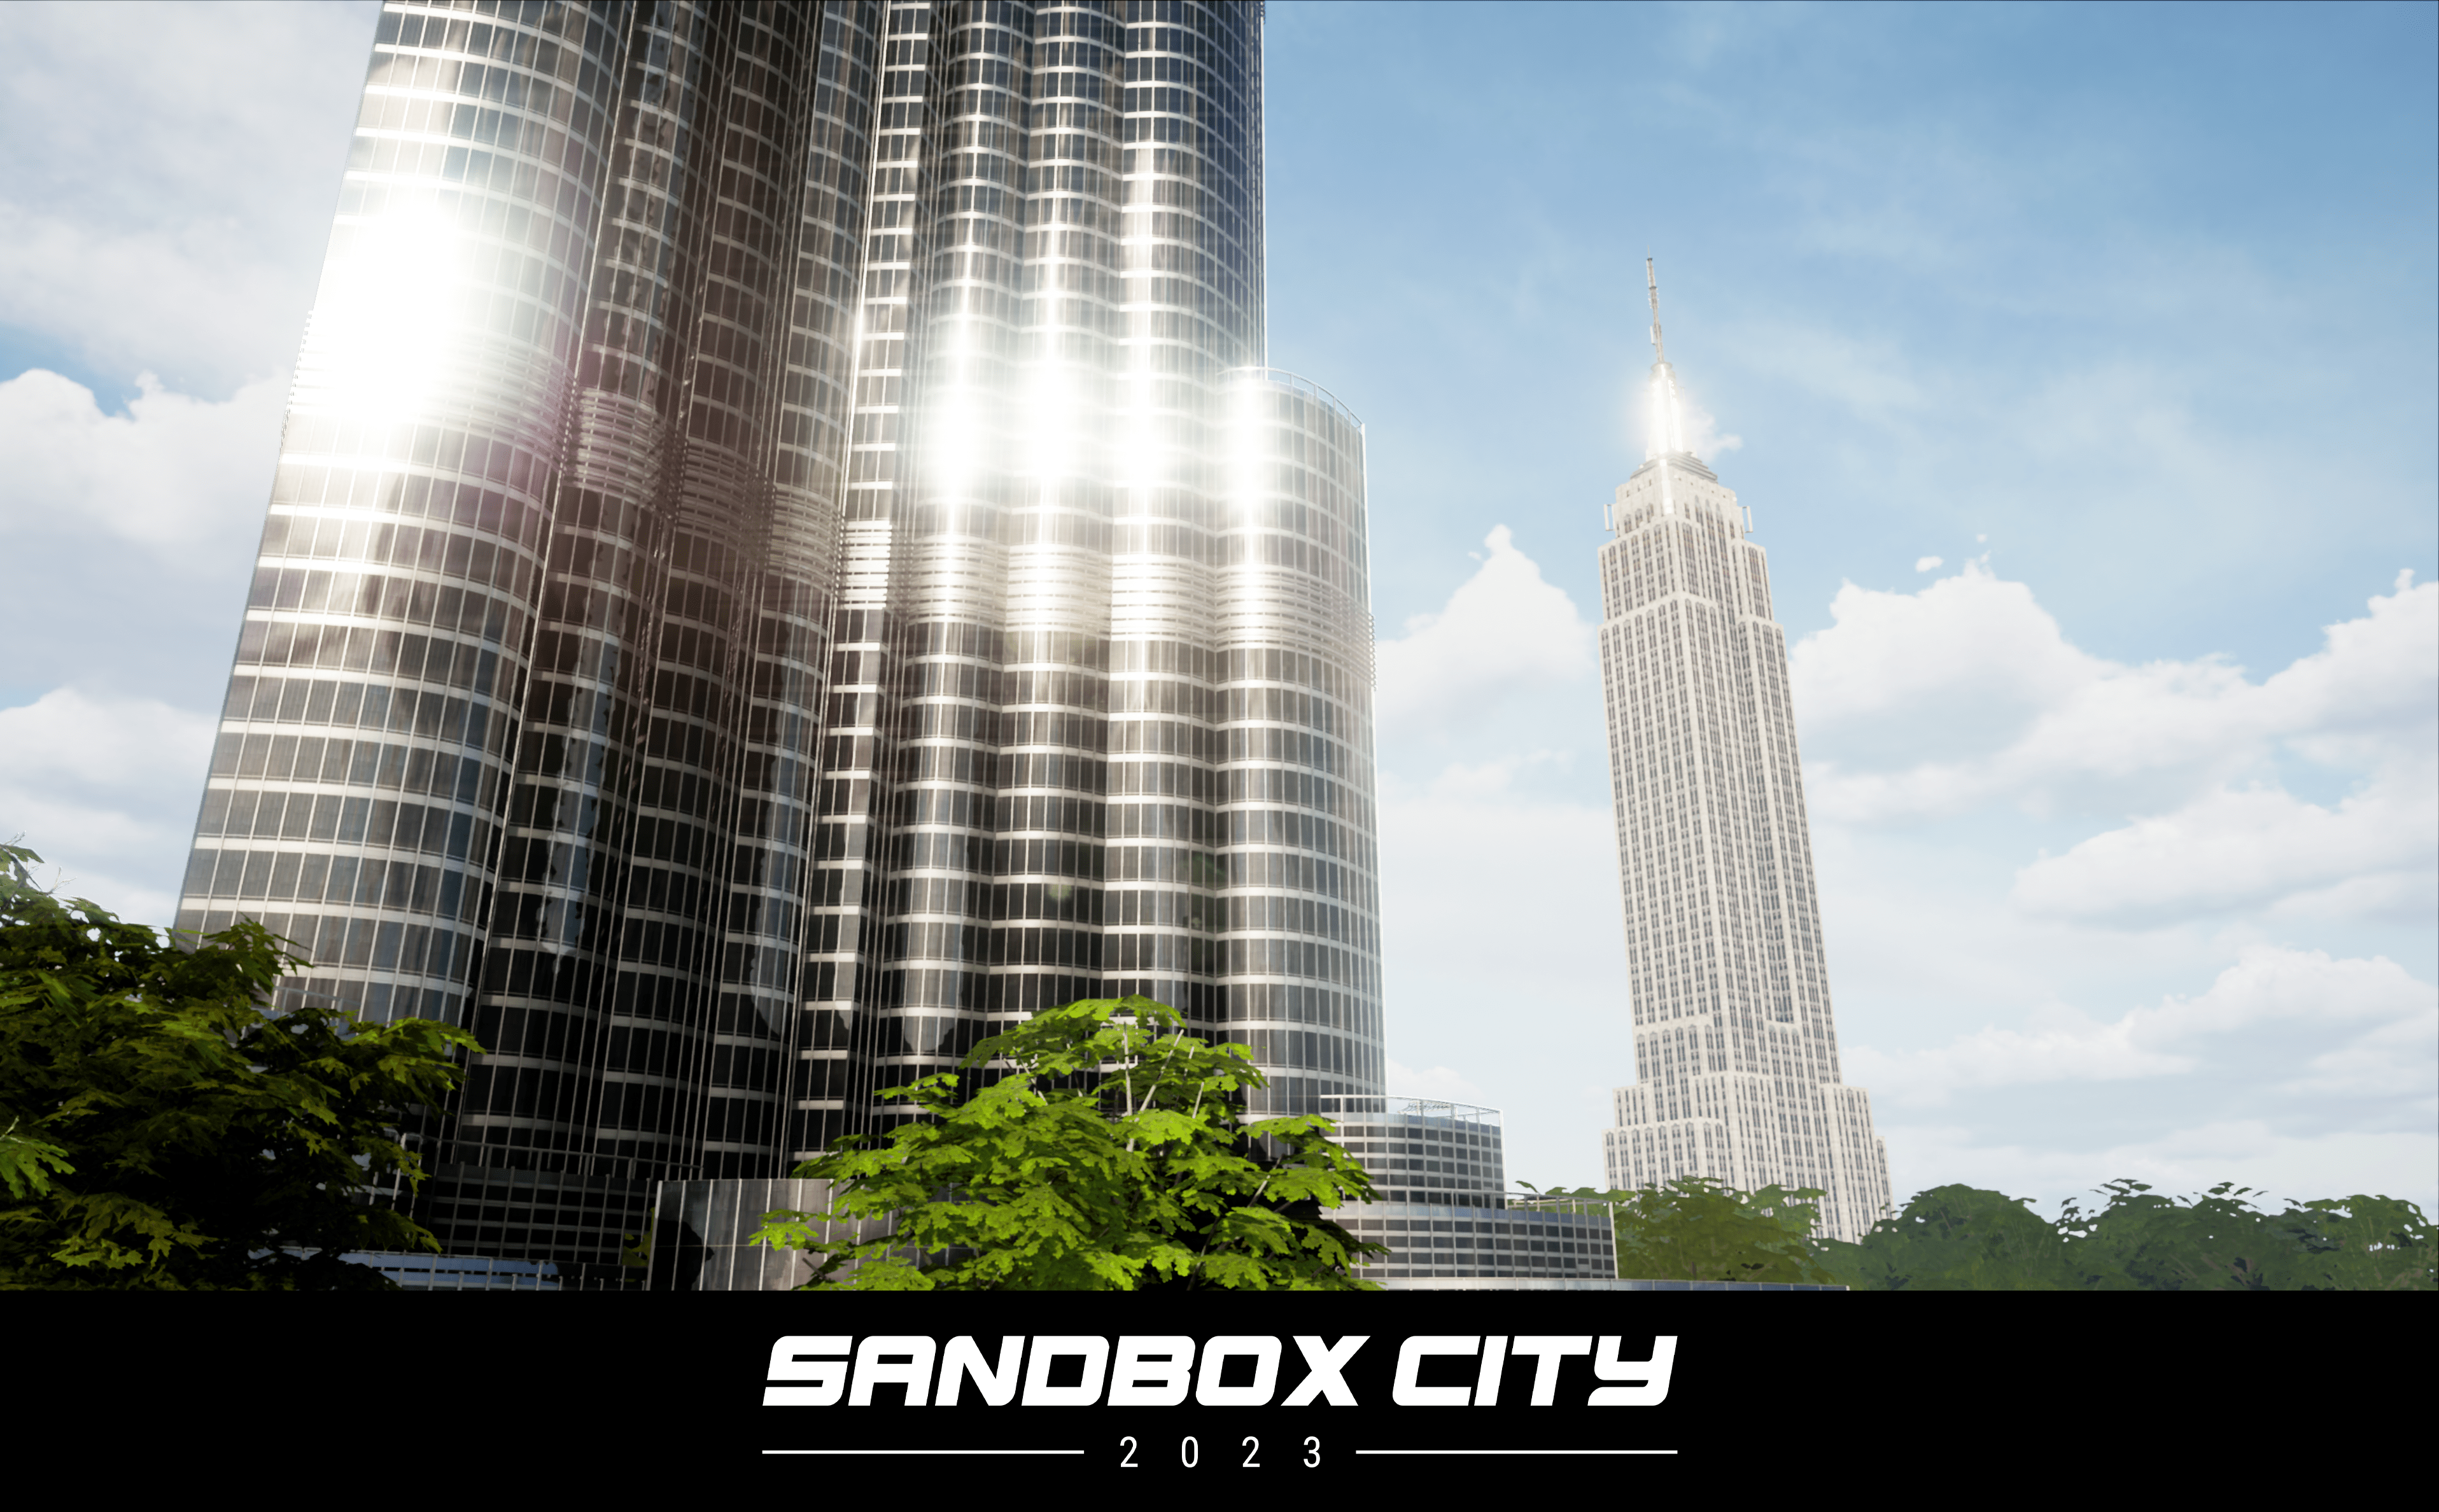 SandBox City 02